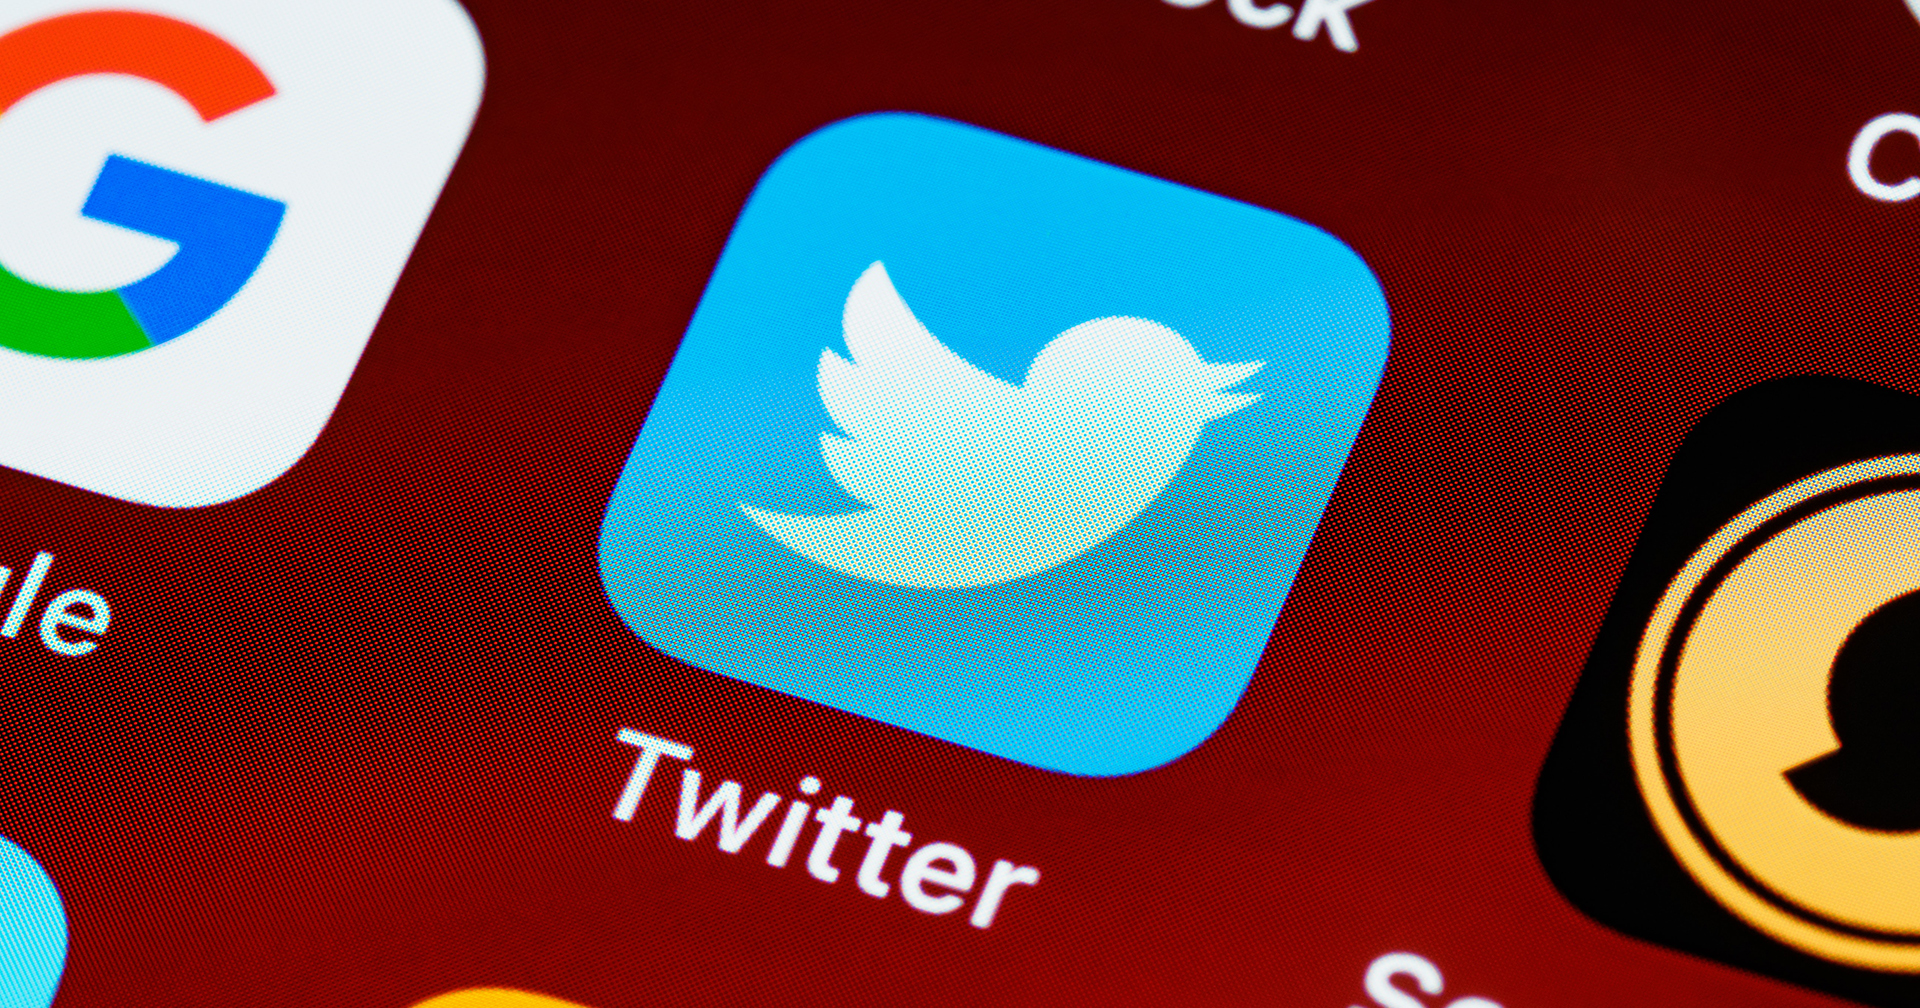 Twitter จะอนุญาตให้โหวตโพลได้เฉพาะบัญชีที่ได้รับการยืนยันตัวตน เริ่มตั้งแต่ 15 เมษายน